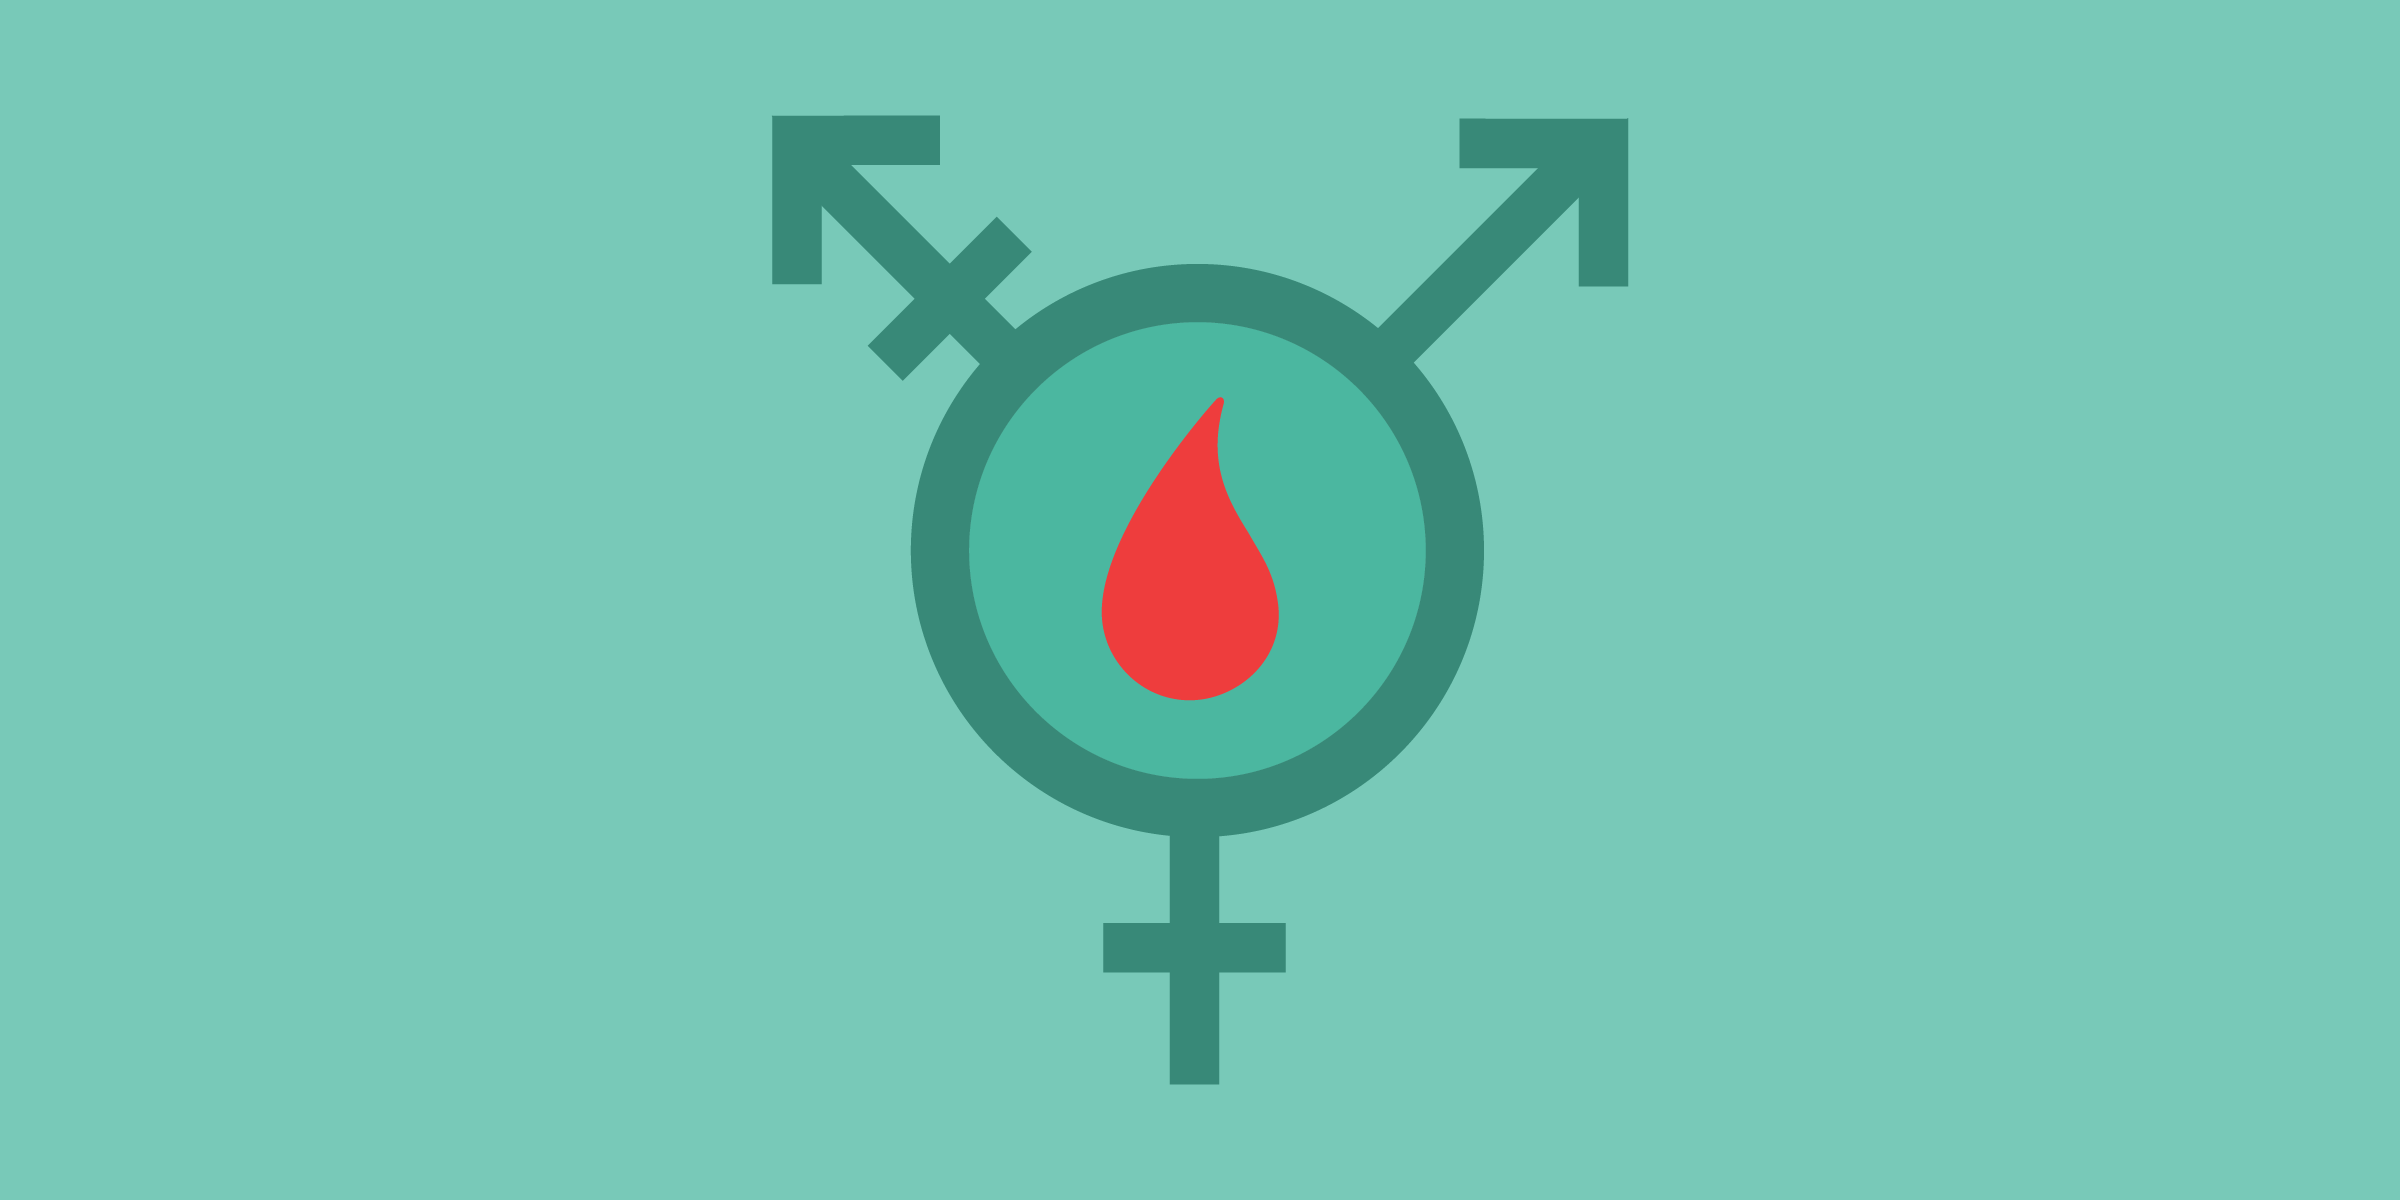 le symbole transgenre en bleu sarcelle avec une goutte de sang rouge au milieu du cercle